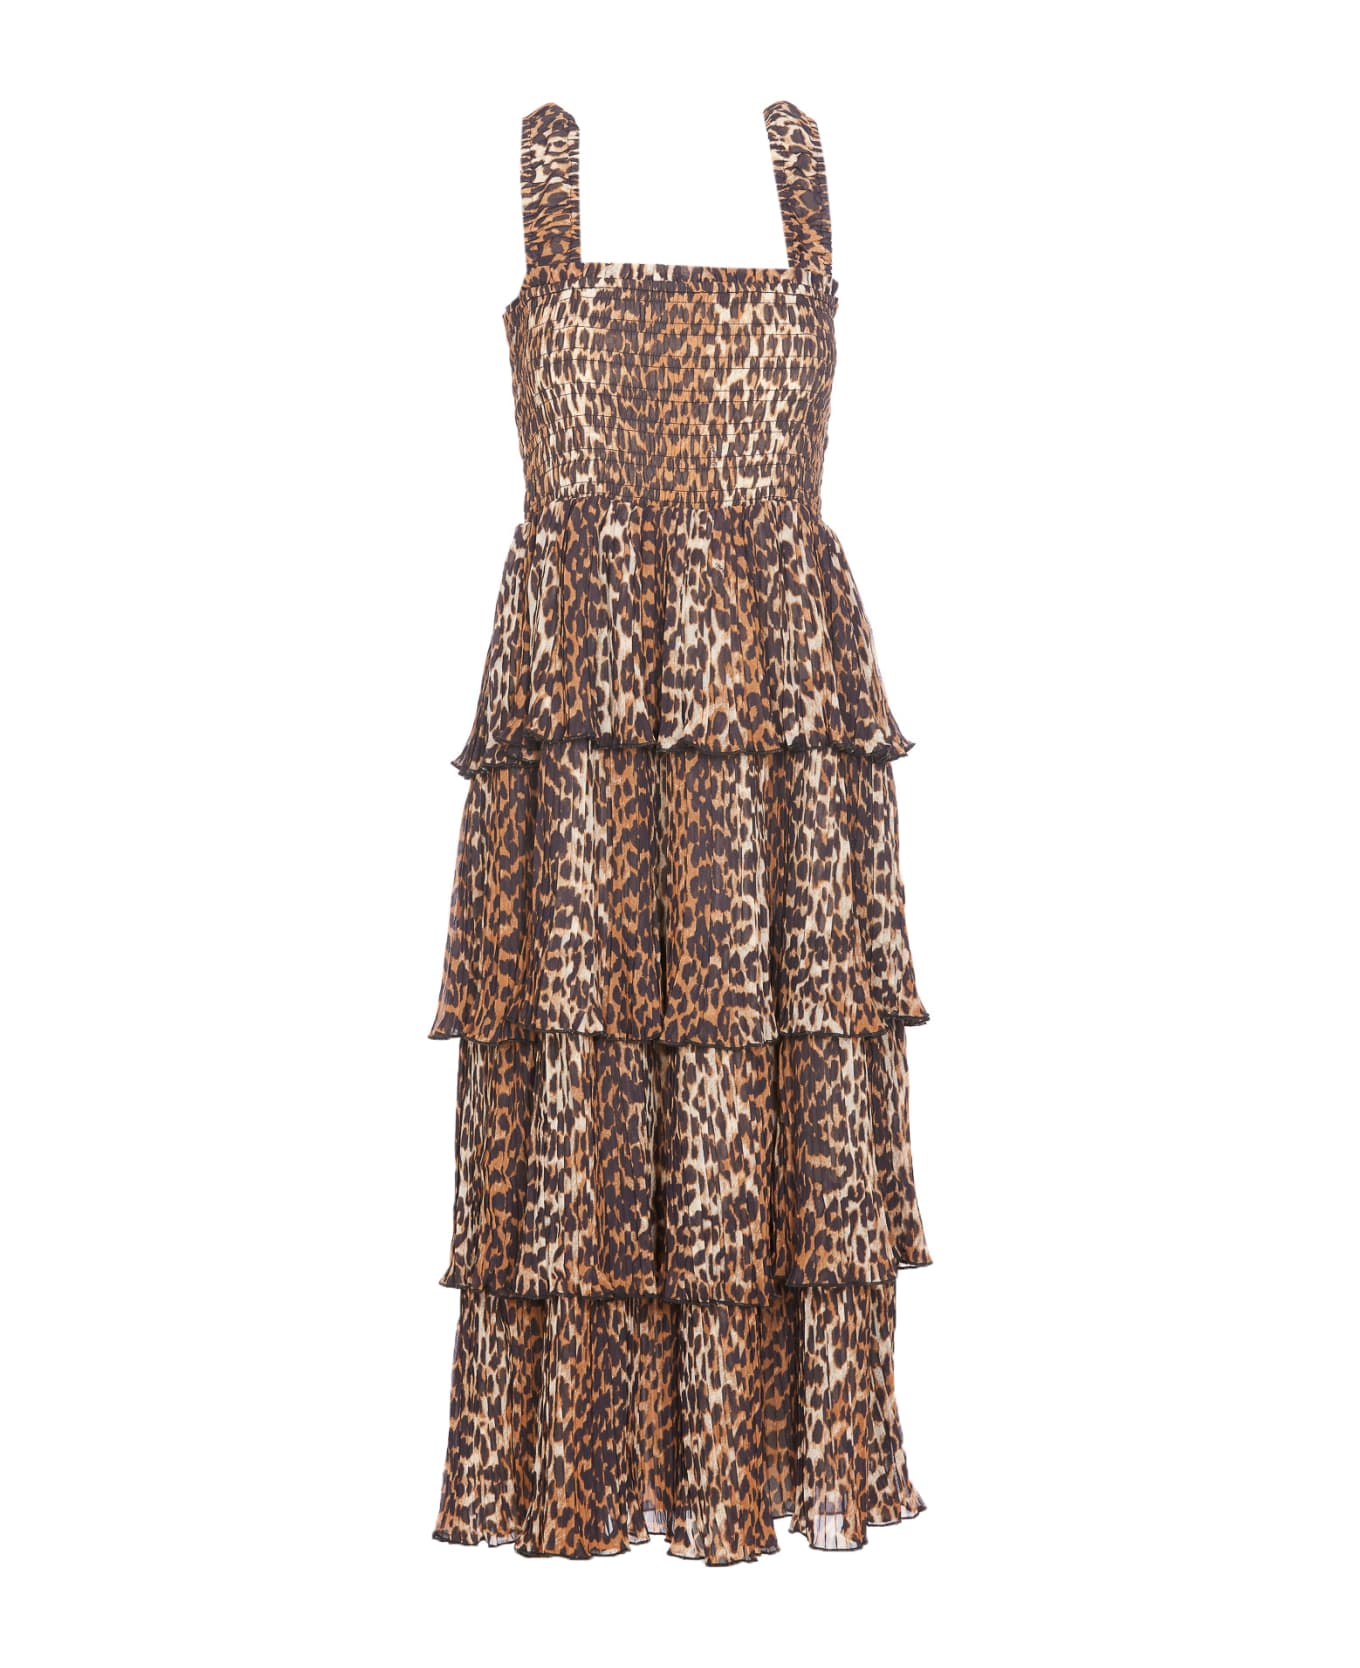 Ganni Leopard Print Midi Dress - Almond Milk